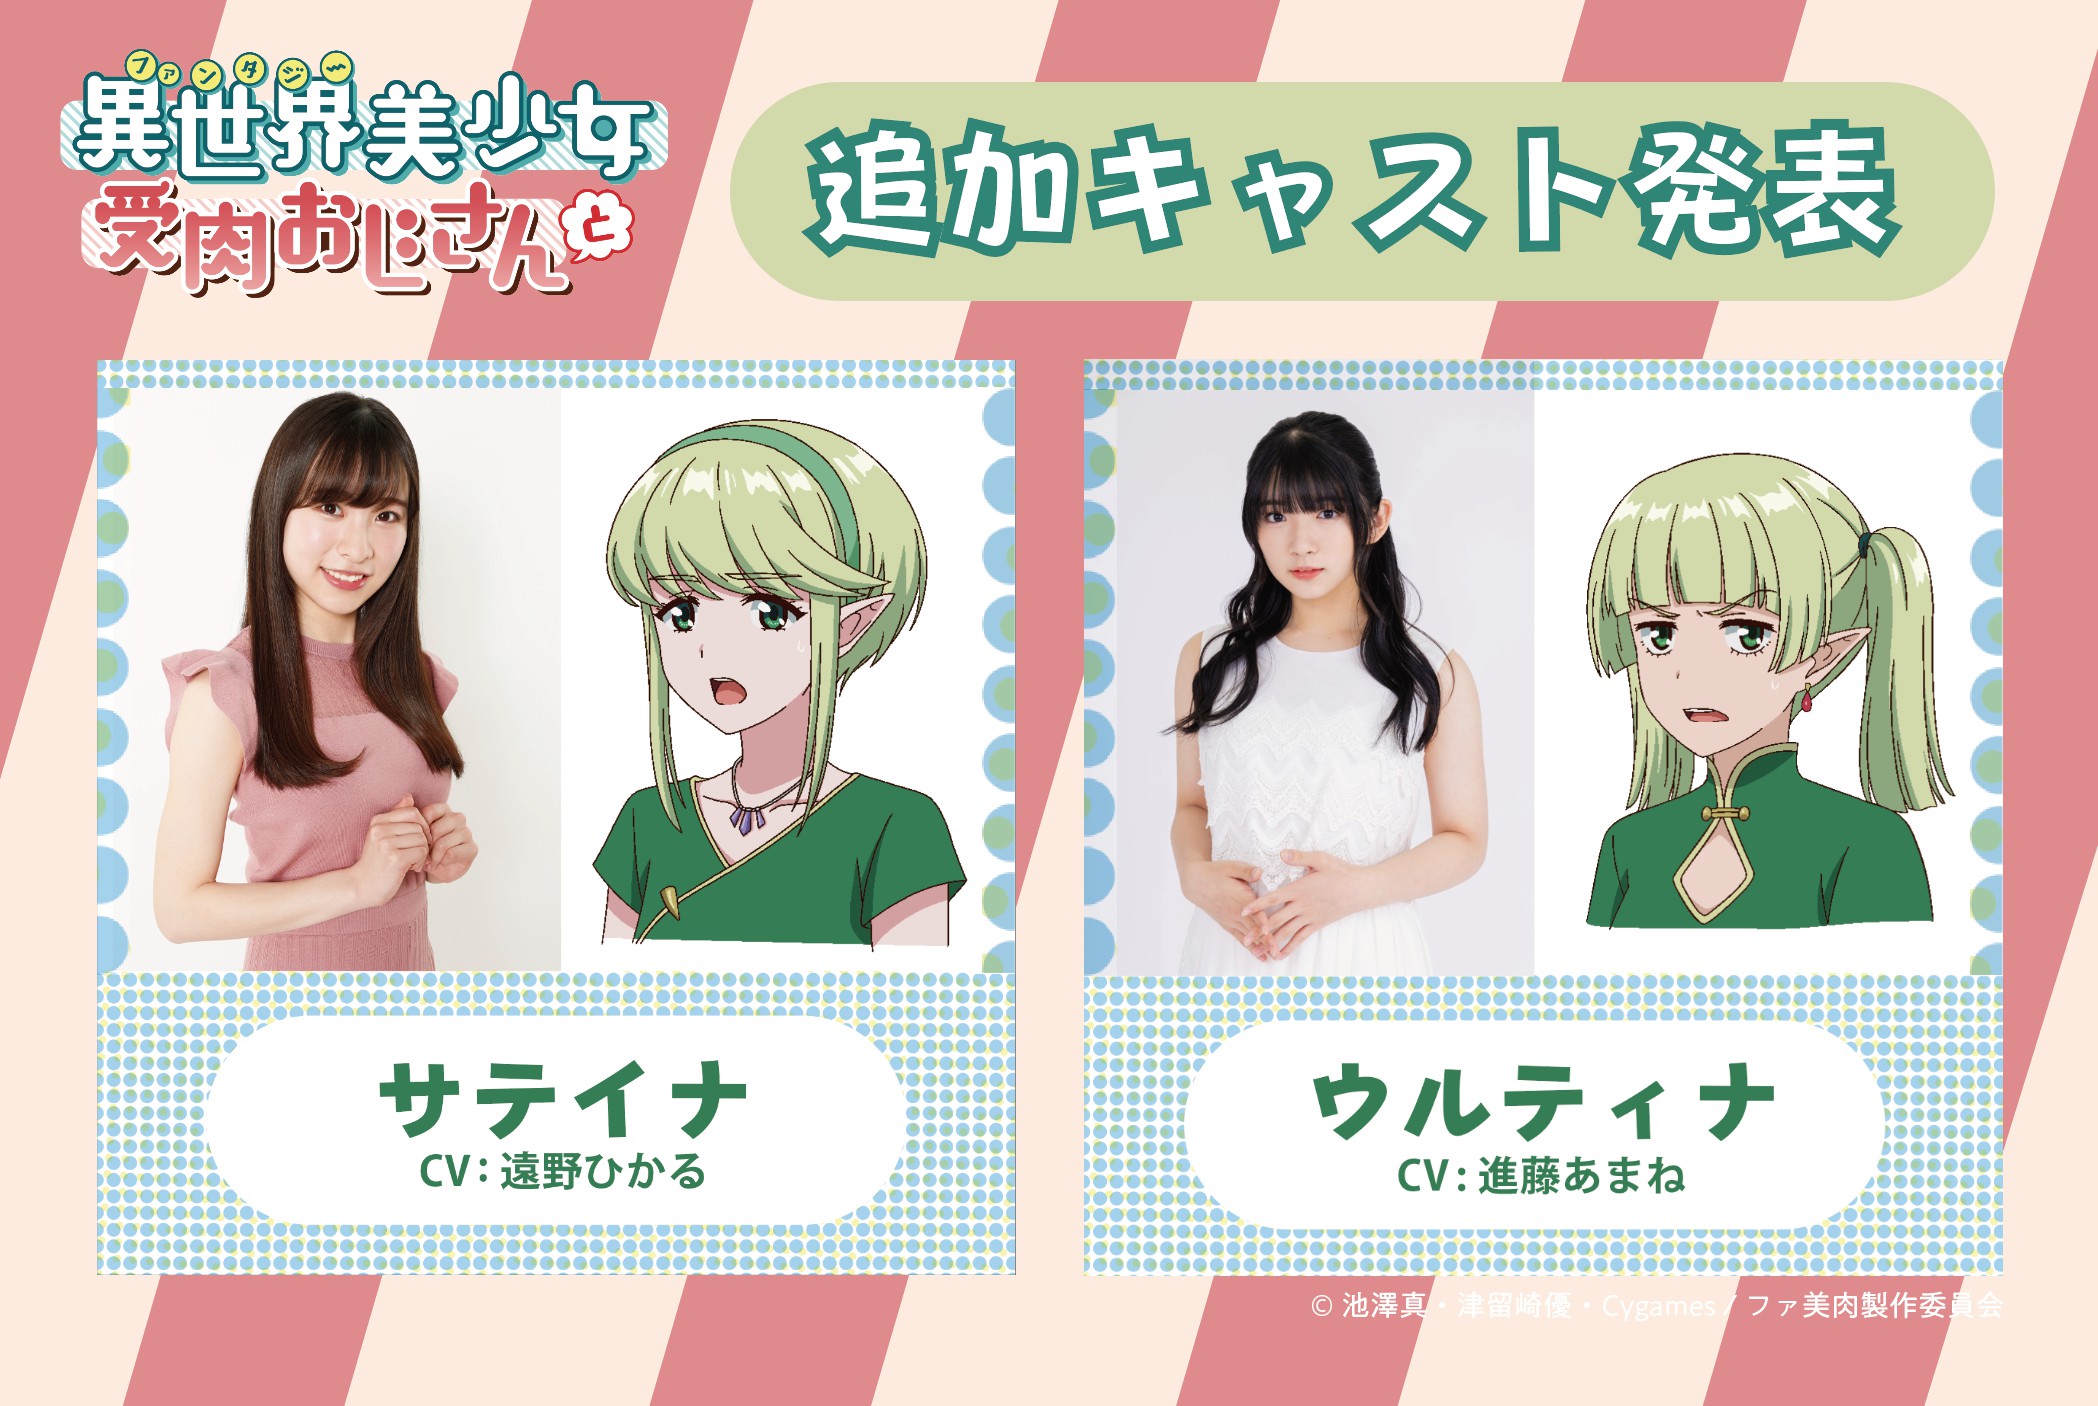 Ein Werbebild für den kommenden Fantasy Bishoujo Juniku Ojisan to TV Anime mit den Synchronsprechern Hikaru Tono und Amane Shindō und ihren jeweiligen Charakteren, dem Elfenduo Satina und Ultina.